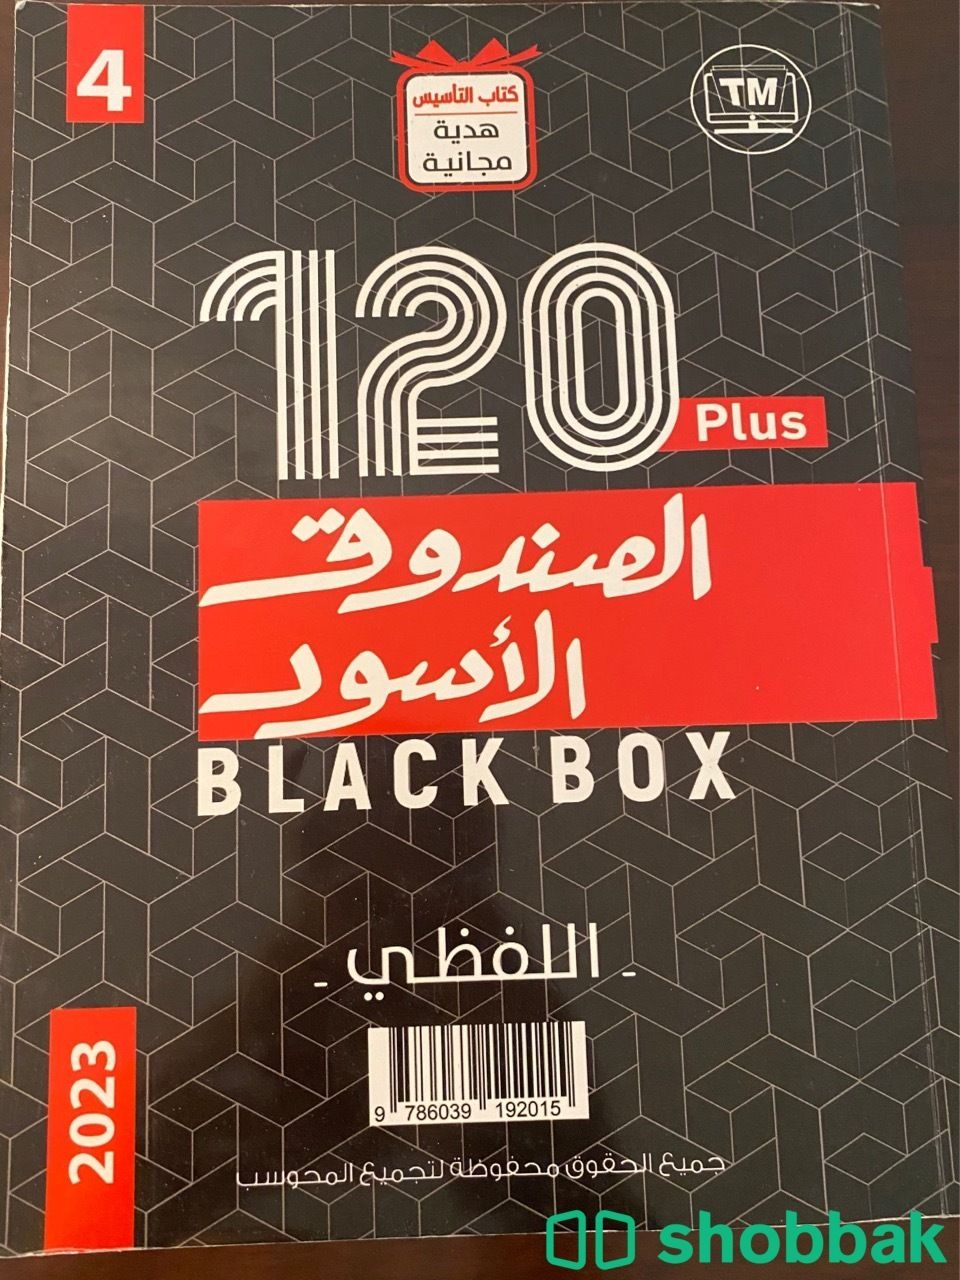 كتب الصندوق الأسود قدرات  Shobbak Saudi Arabia